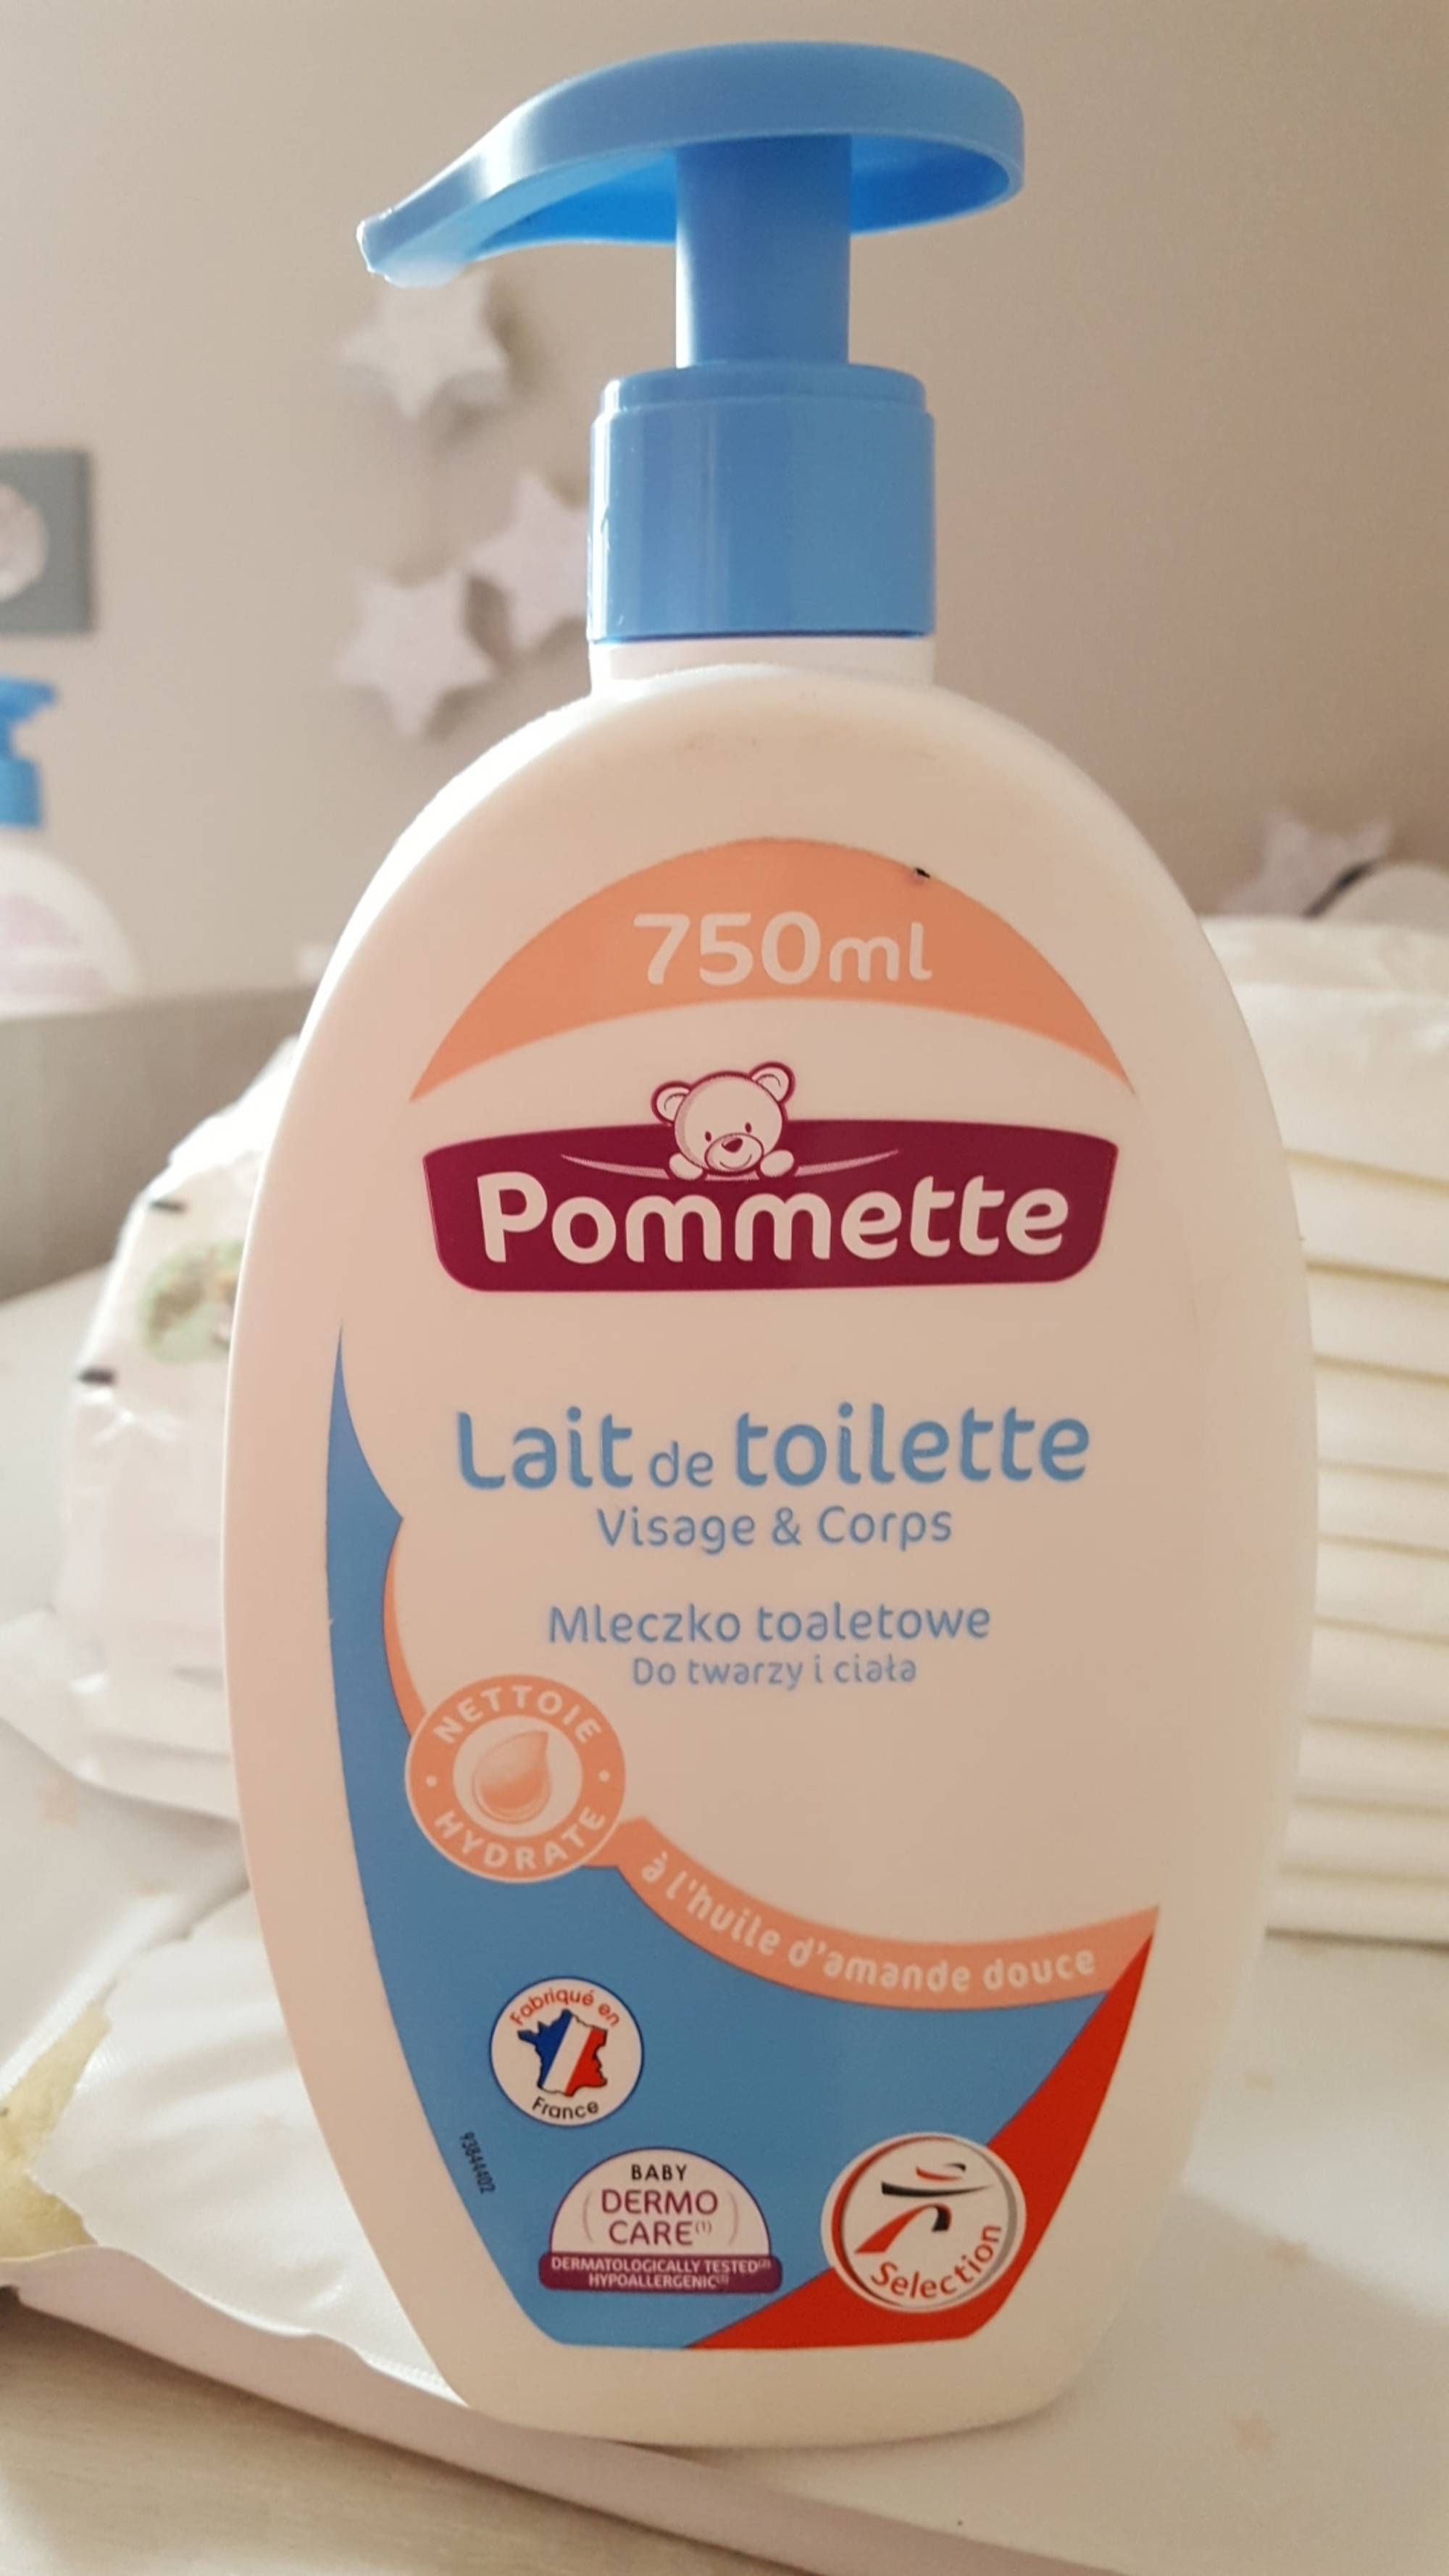 POMMETTE - Lait de toilette visage & corps